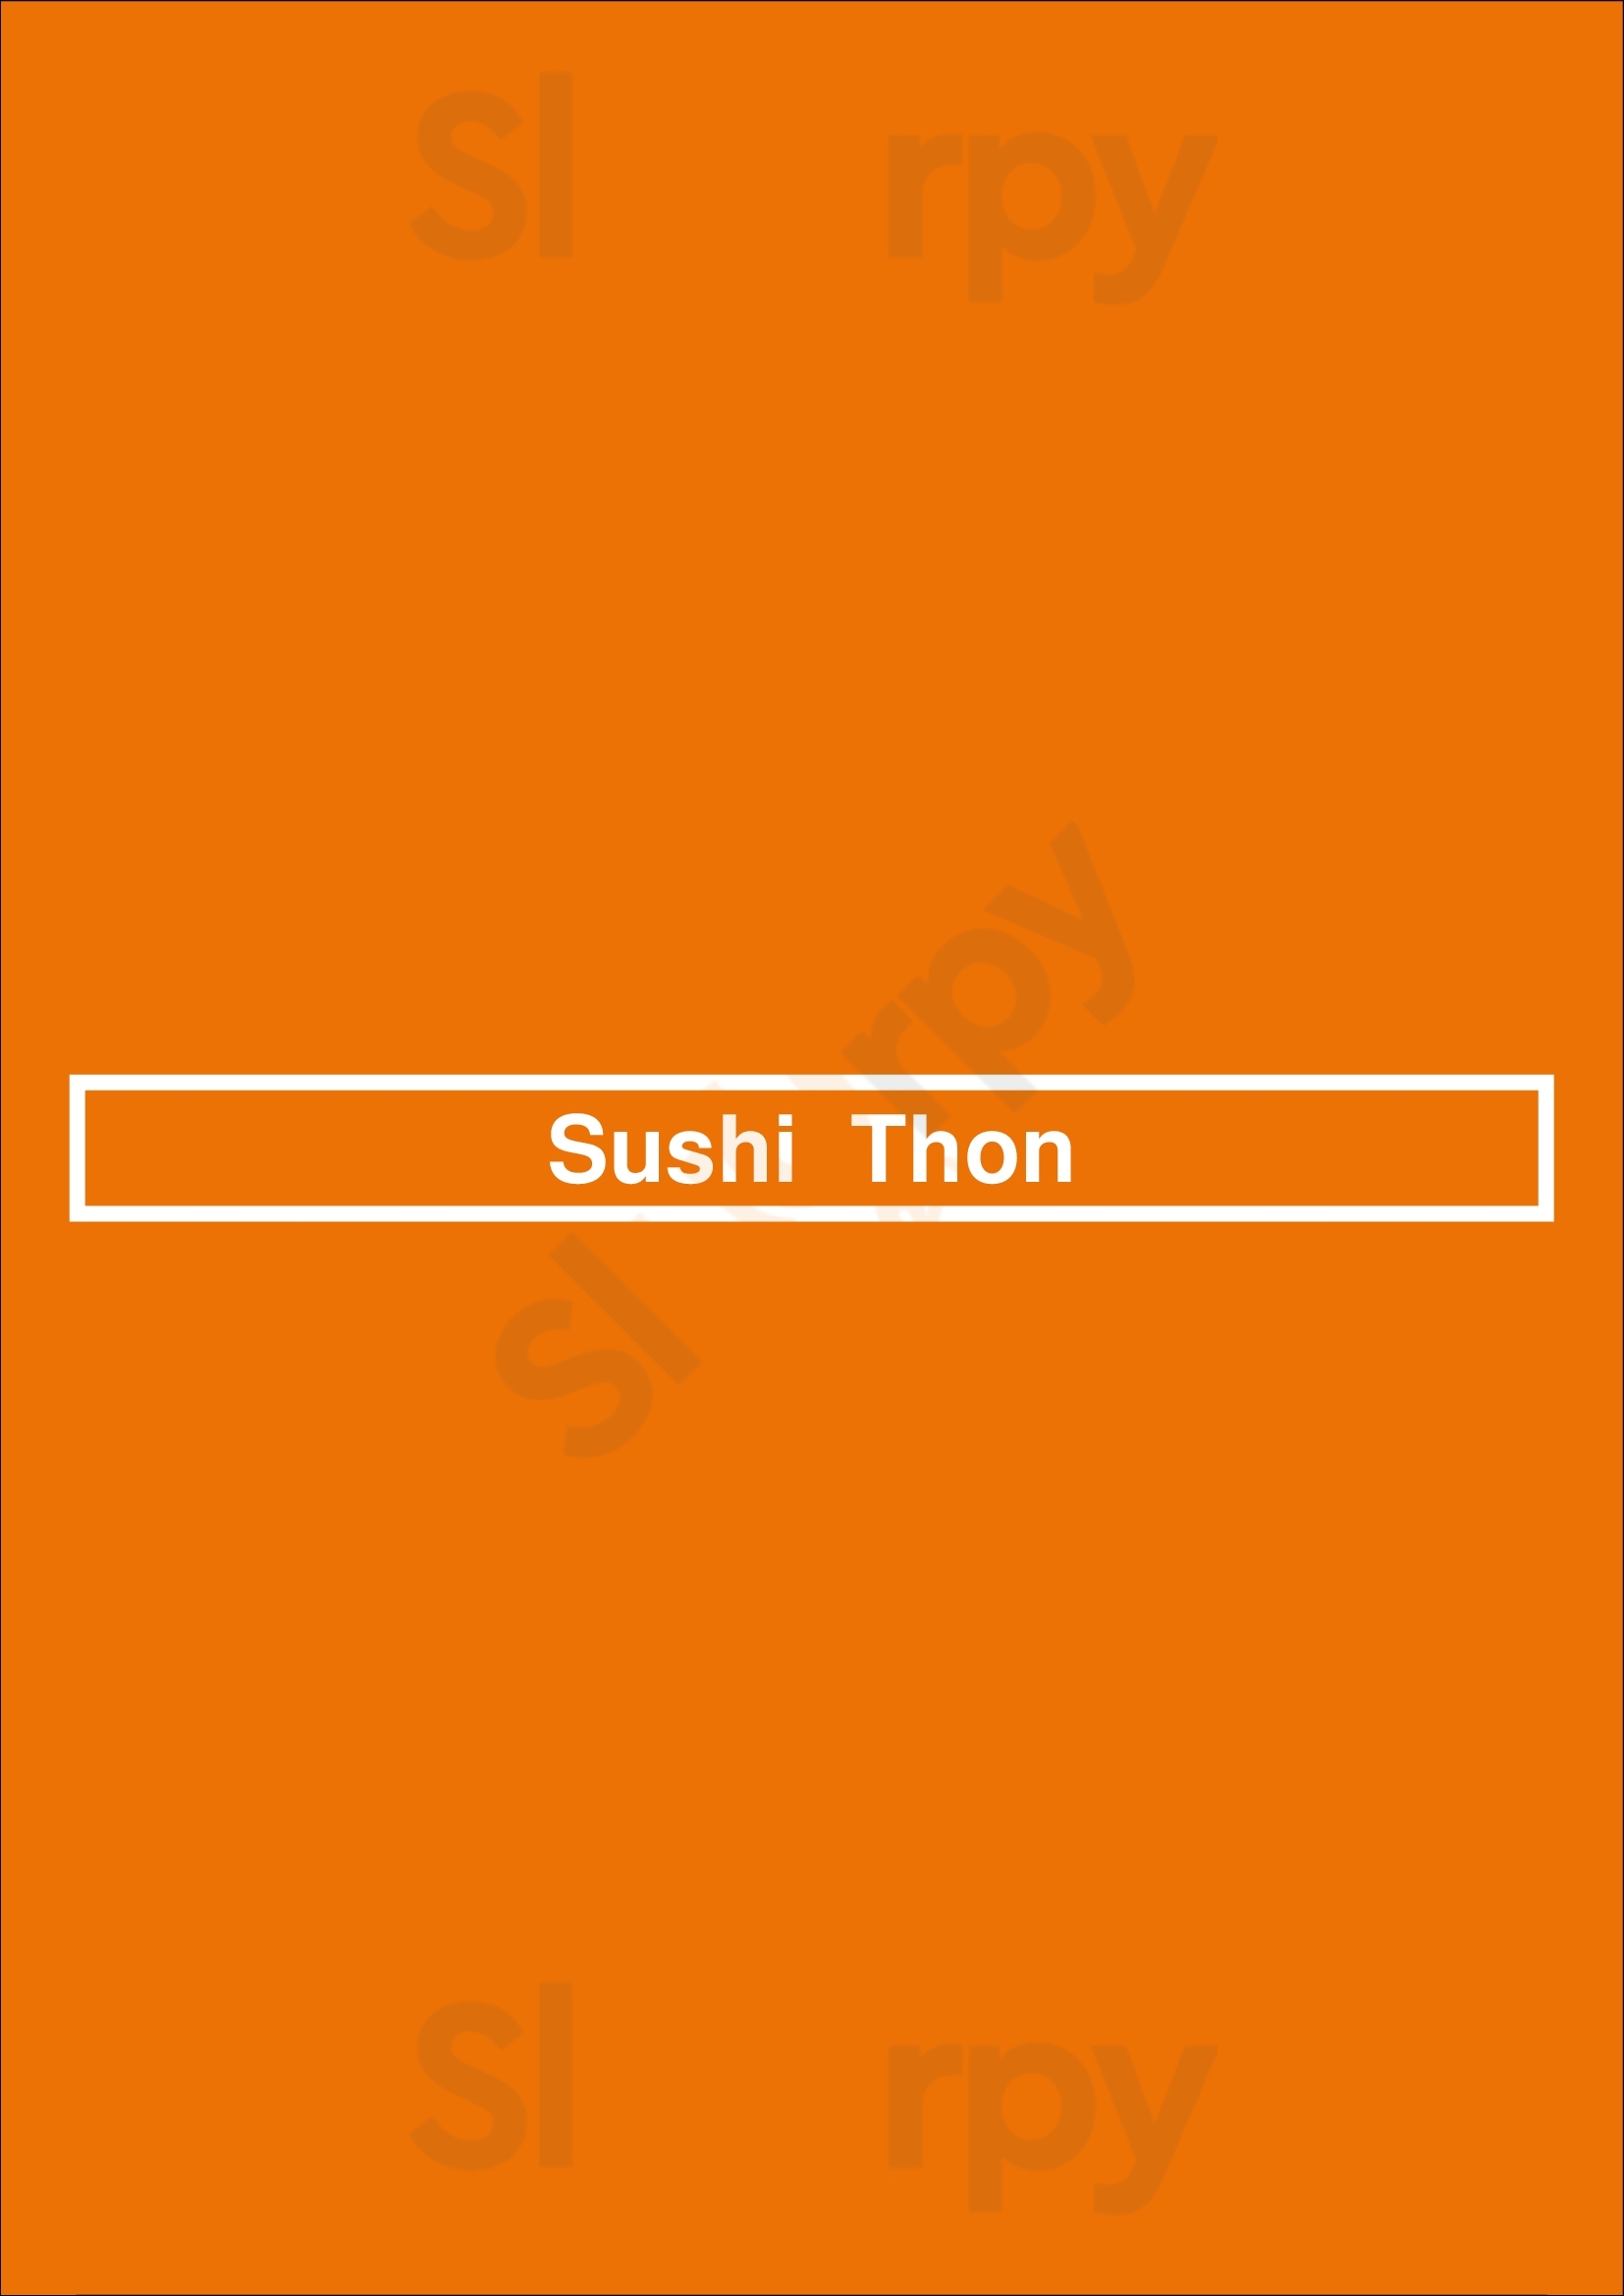 Sushi  Thon Bordeaux Menu - 1